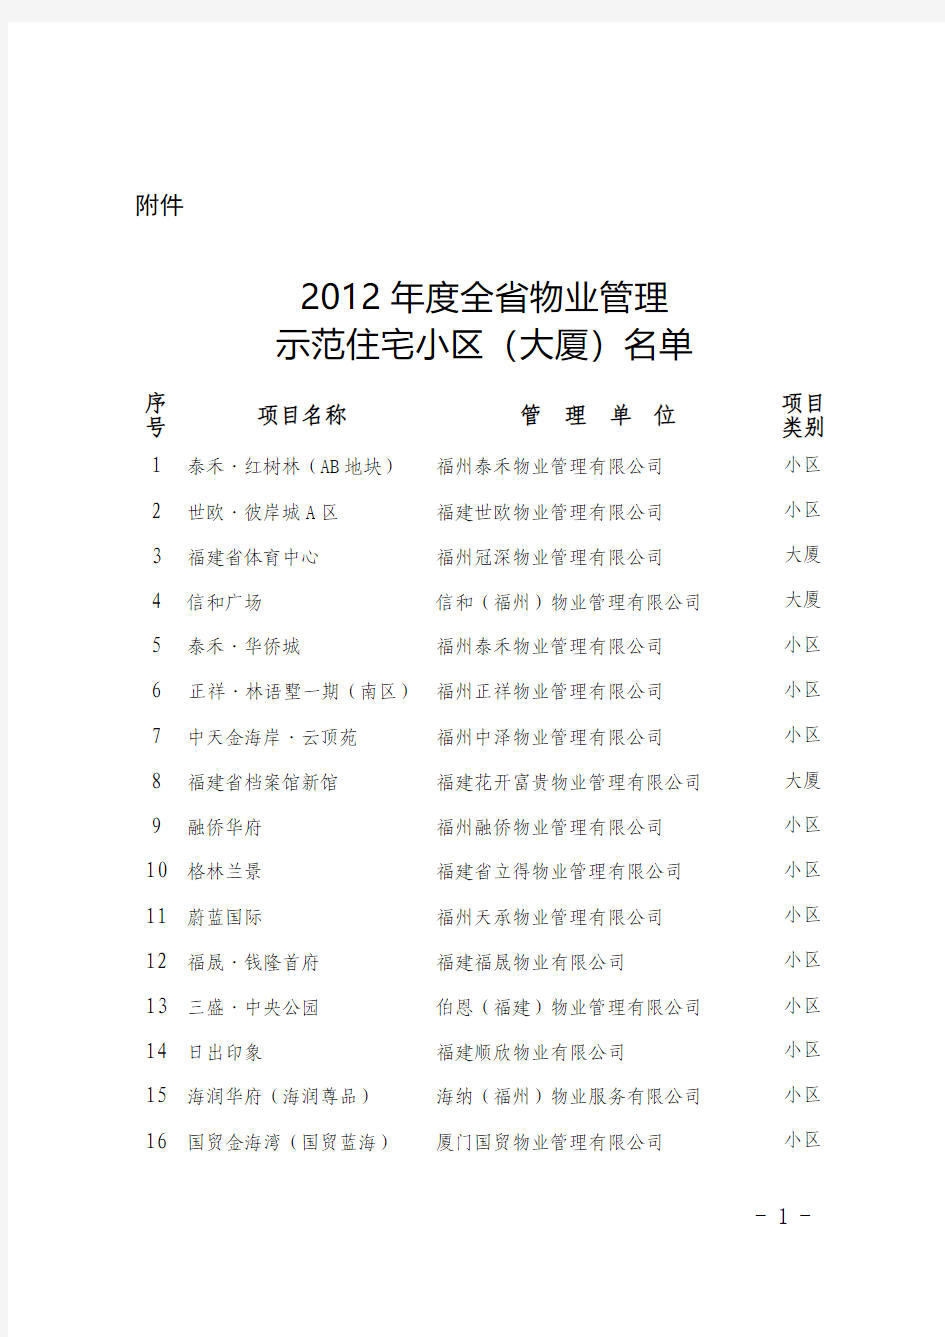 2012年度全省物业管理示范住宅小区(大厦)名单